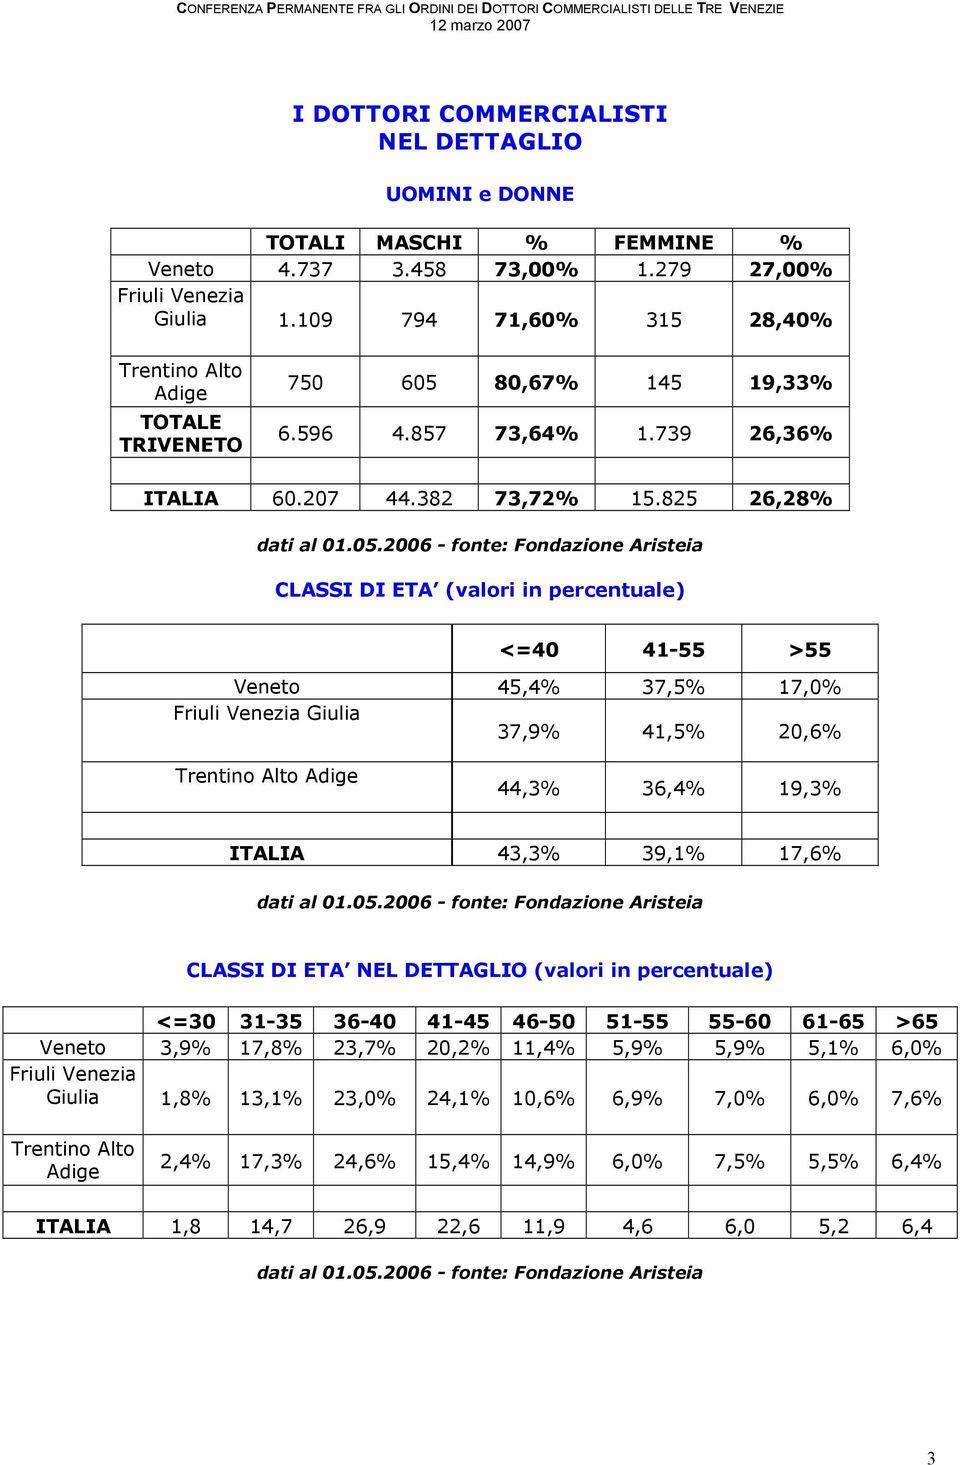 825 26,28% CLASSI DI ETA (valori in percentuale) <=40 41-55 >55 Veneto 45,4% 37,5% 17,0% Friuli Venezia Giulia 37,9% 41,5% 20,6% Trentino Alto Adige 44,3% 36,4% 19,3% ITALIA 43,3% 39,1% 17,6% CLASSI